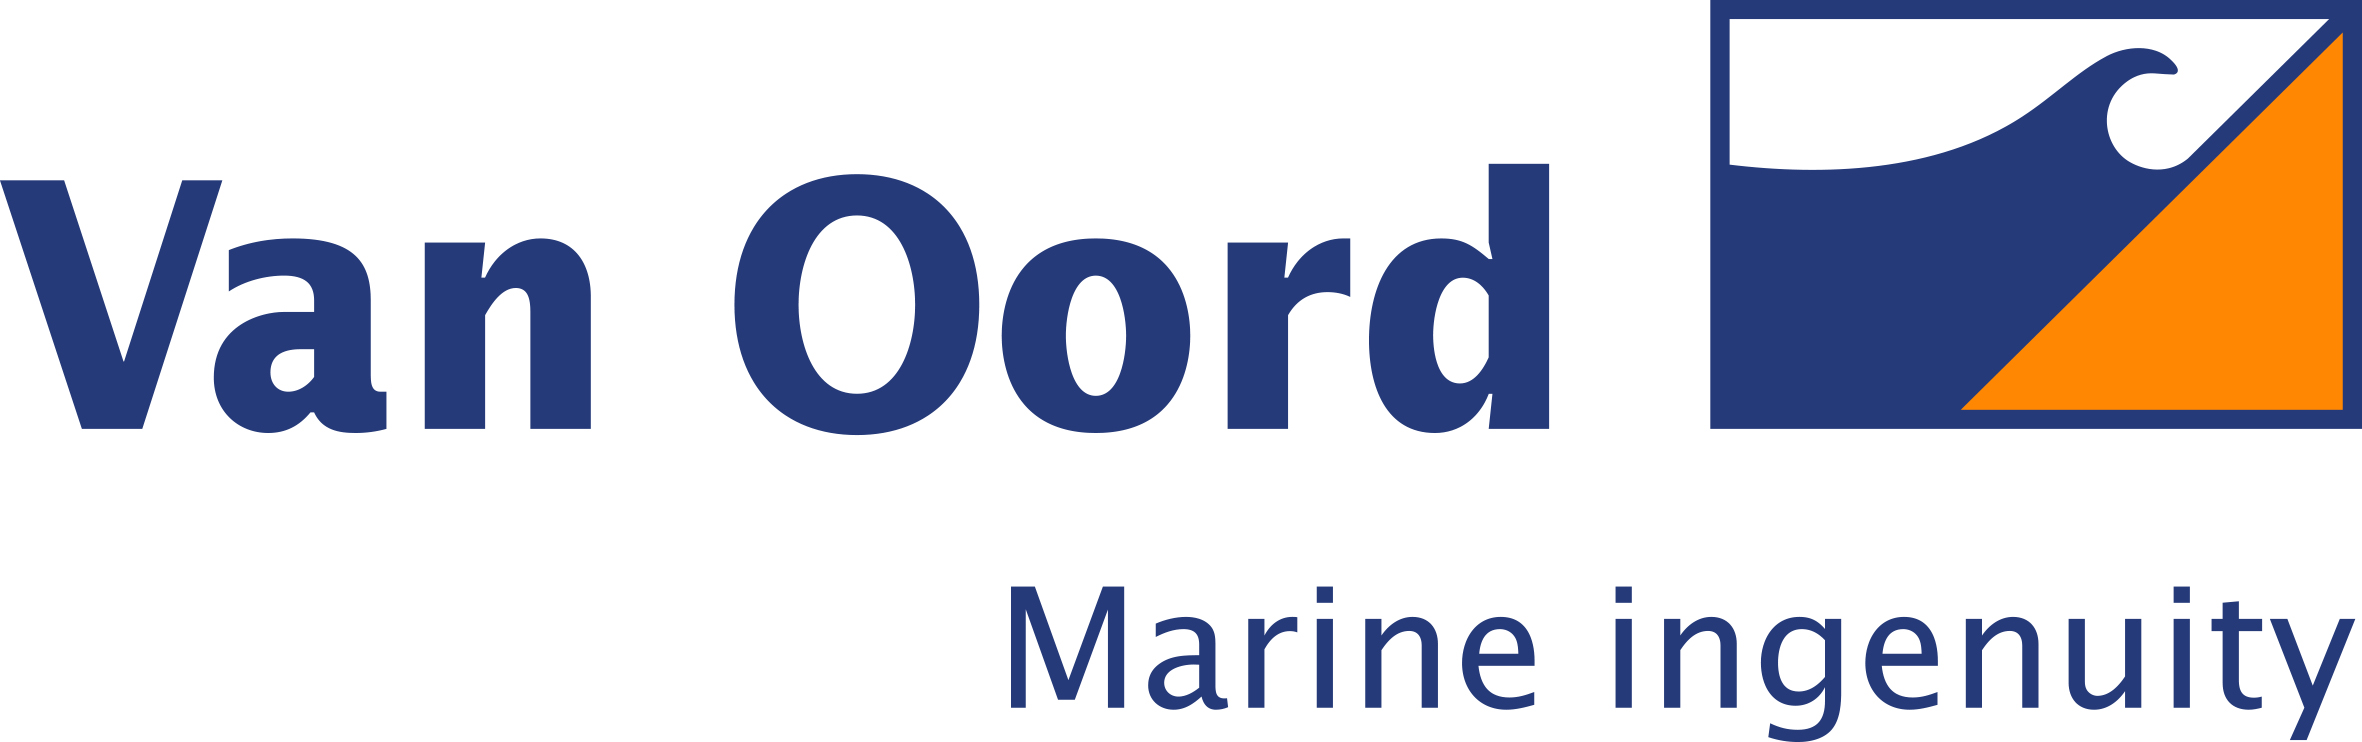 Logo Van Oord jpeg.jpg